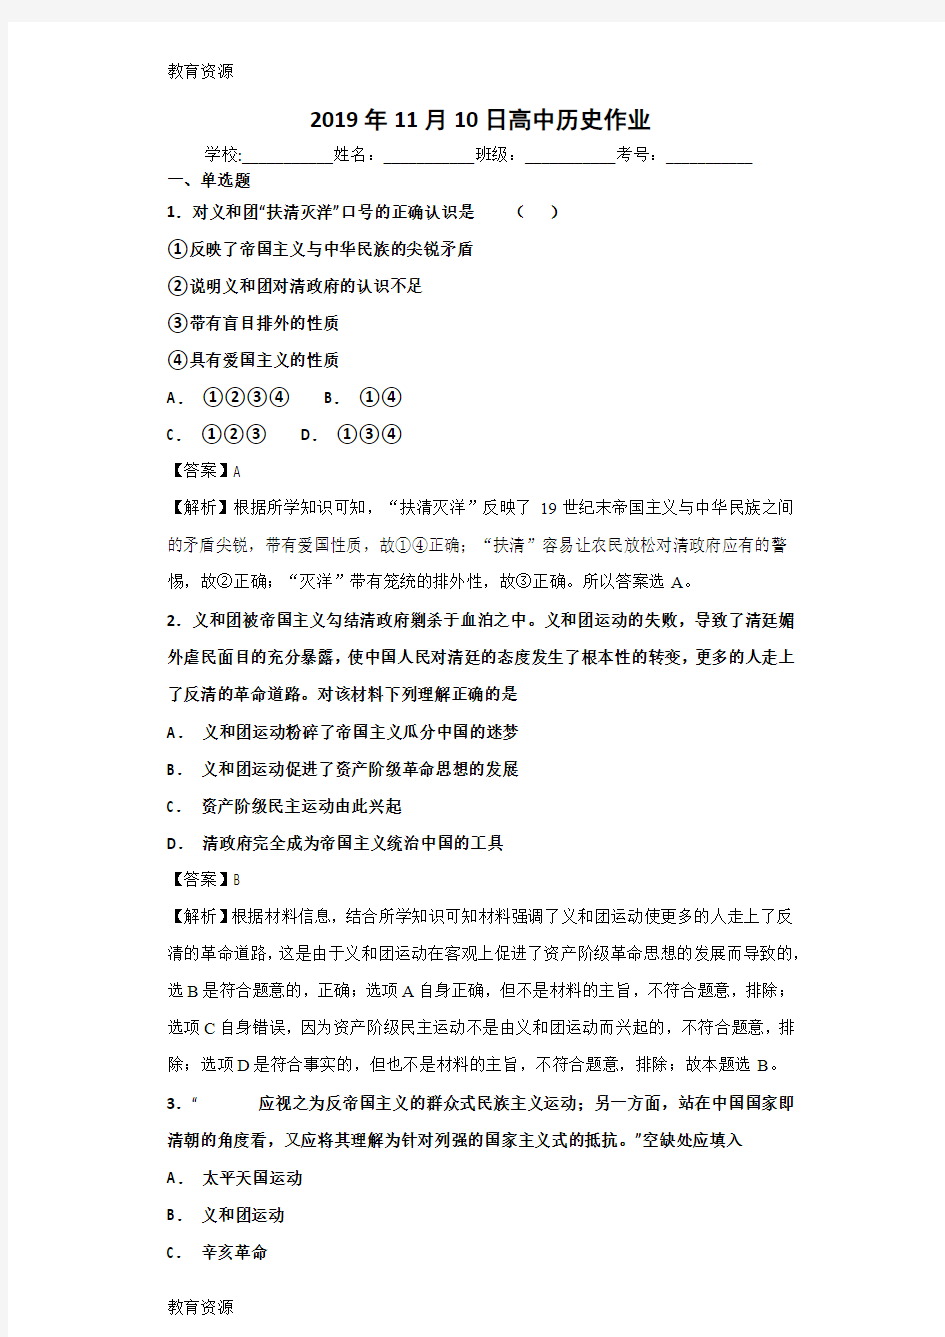 【教育资料】人民版必修一2.2 中国军民维护国家主权的斗争测试题学习精品